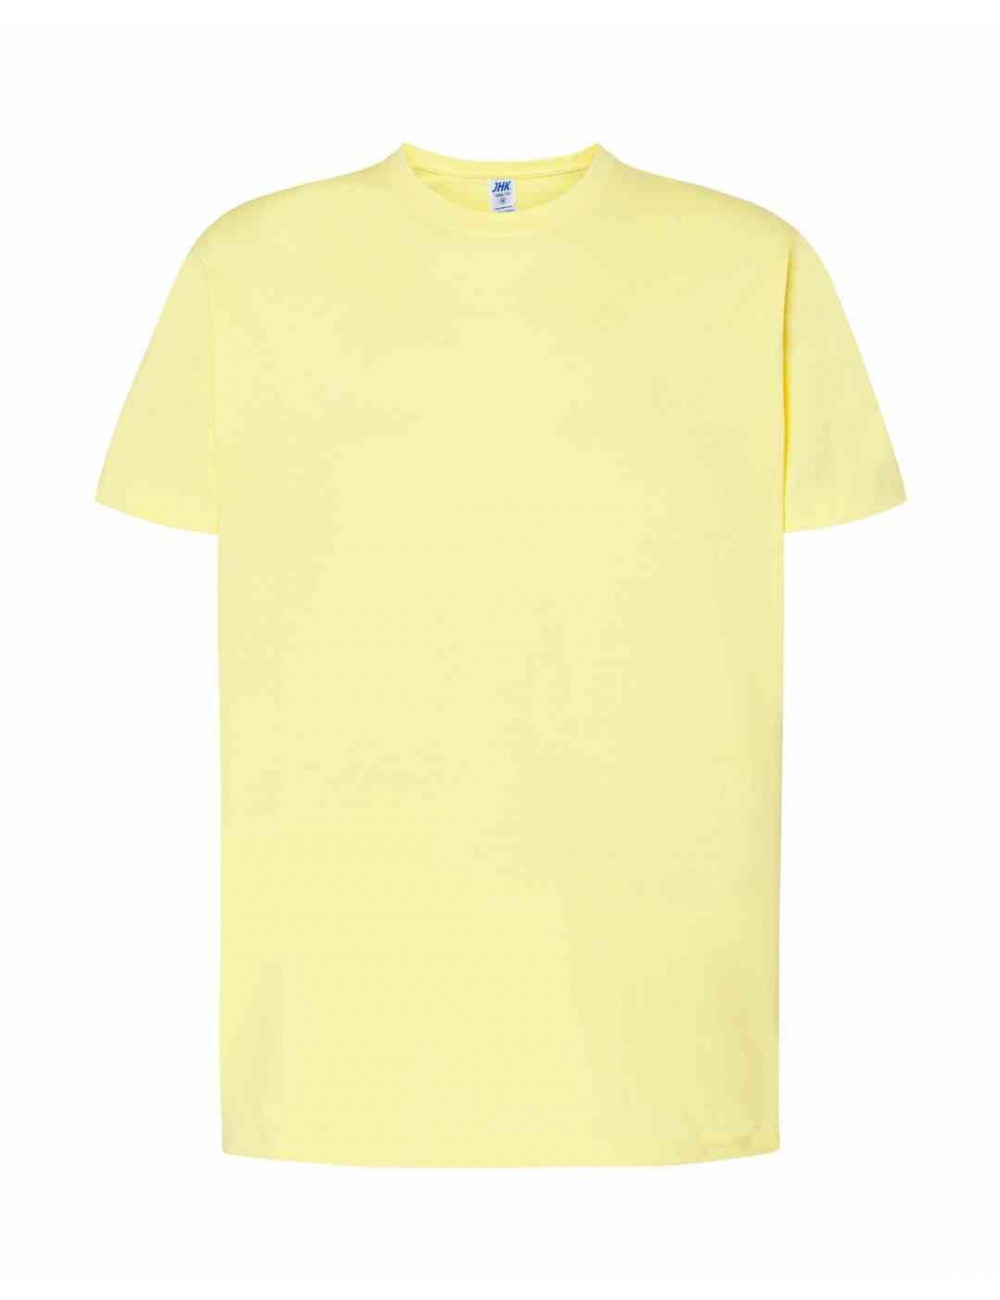 Koszulka męska tsra 150 regular t-shirt ly - light yellow Jhk